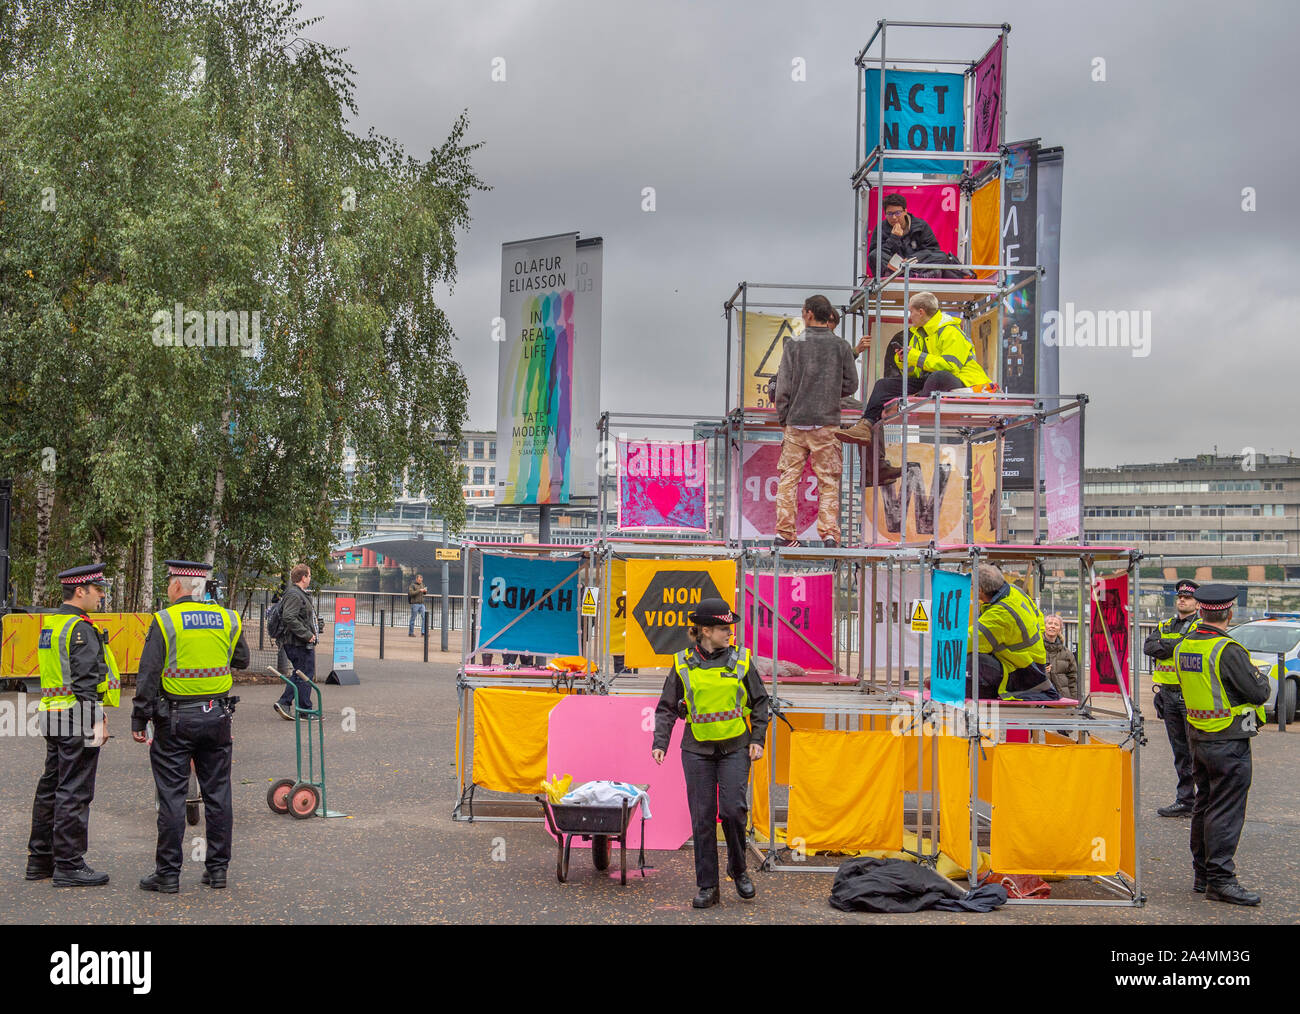 Bankside, London, UK. 15. Oktober 2019. Aussterben Rebellion Klimawandel Protest findet außerhalb der Tate Modern, als die Polizei eintrifft. Stockfoto